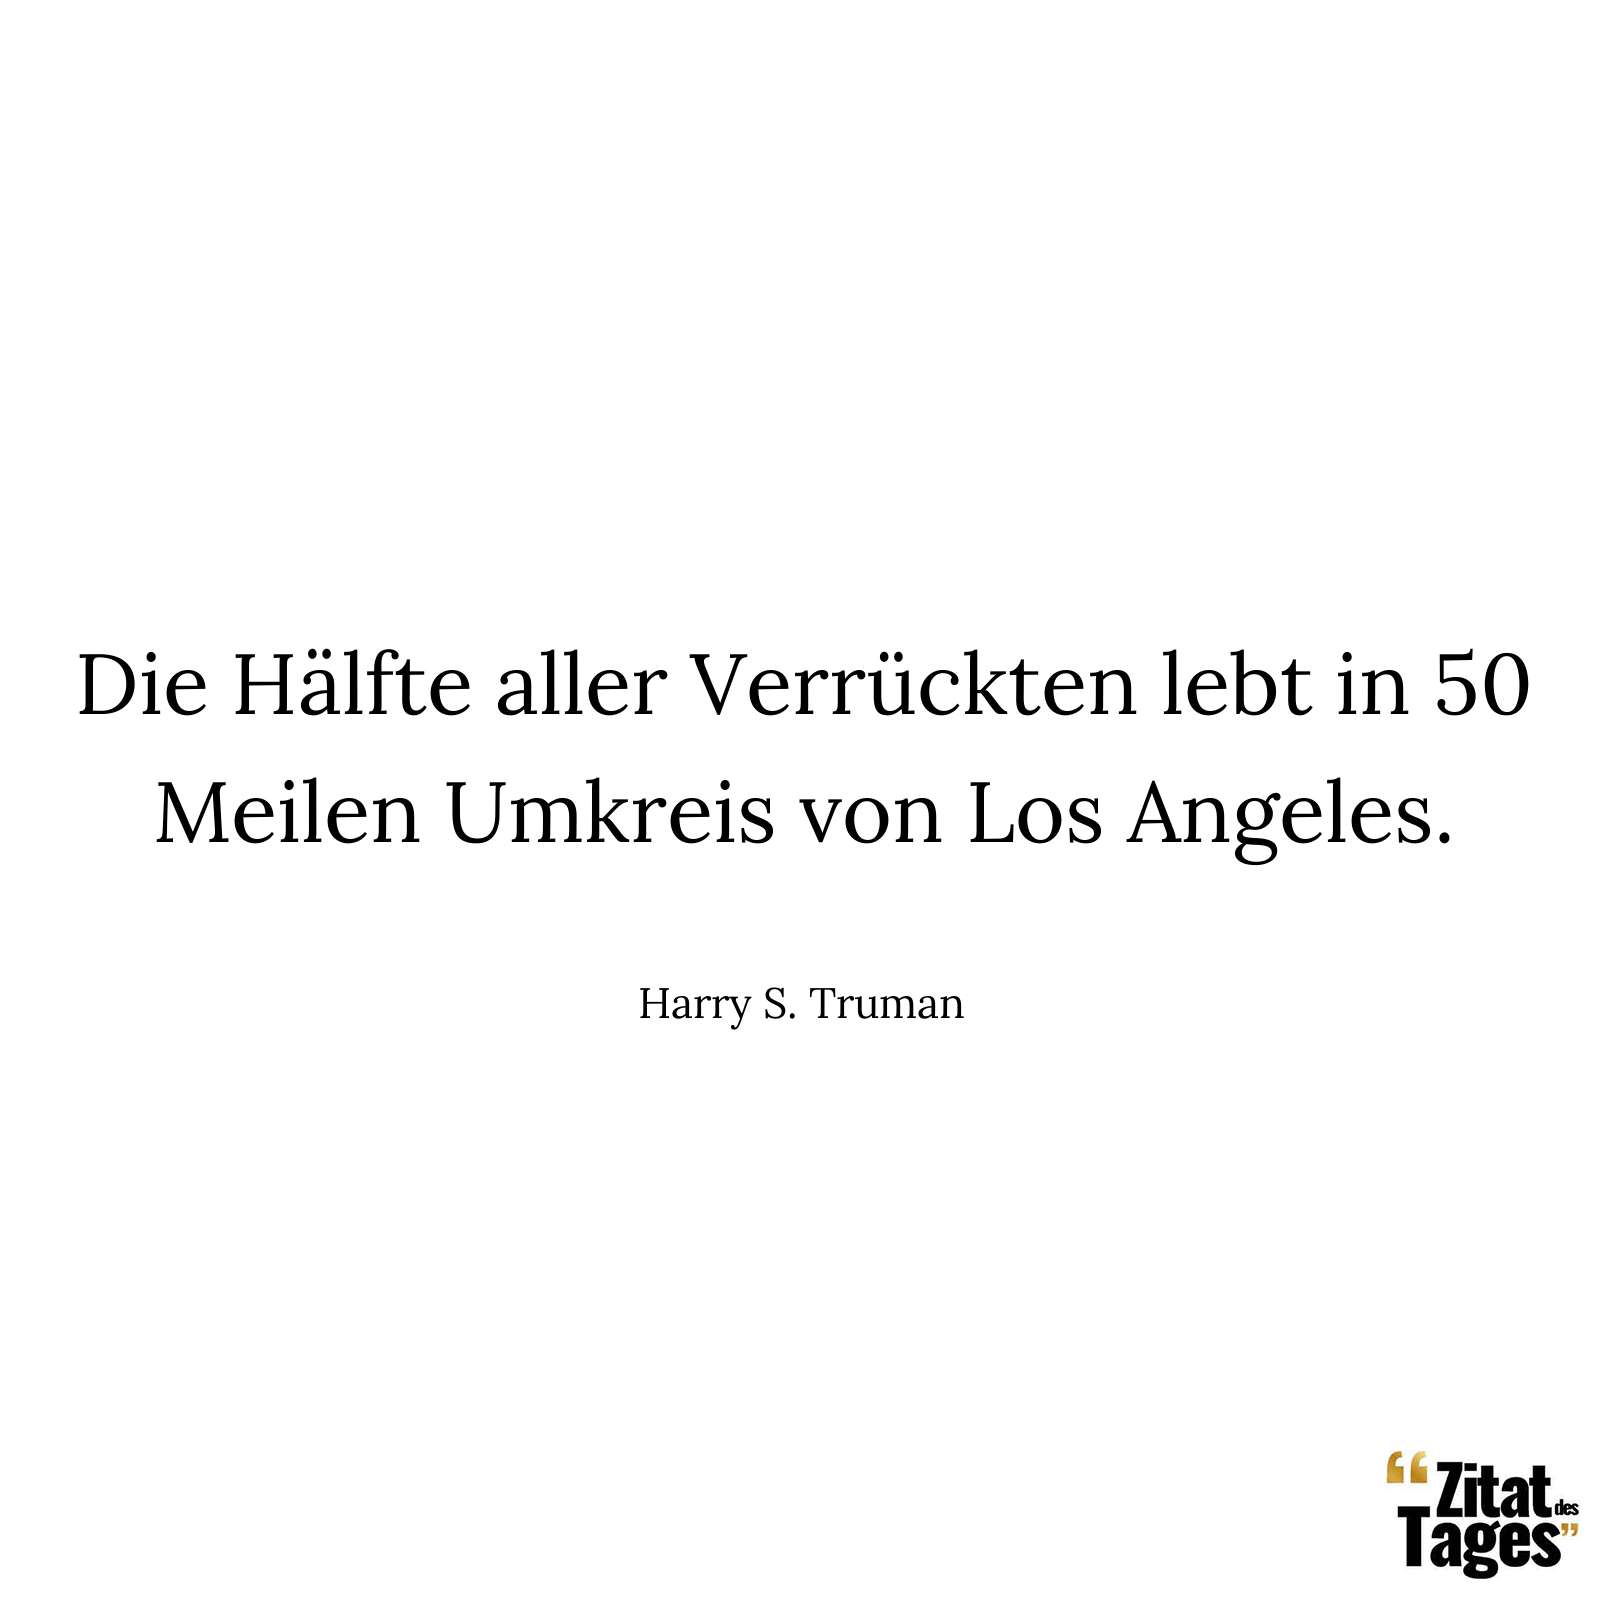 Die Hälfte aller Verrückten lebt in 50 Meilen Umkreis von Los Angeles. - Harry S. Truman